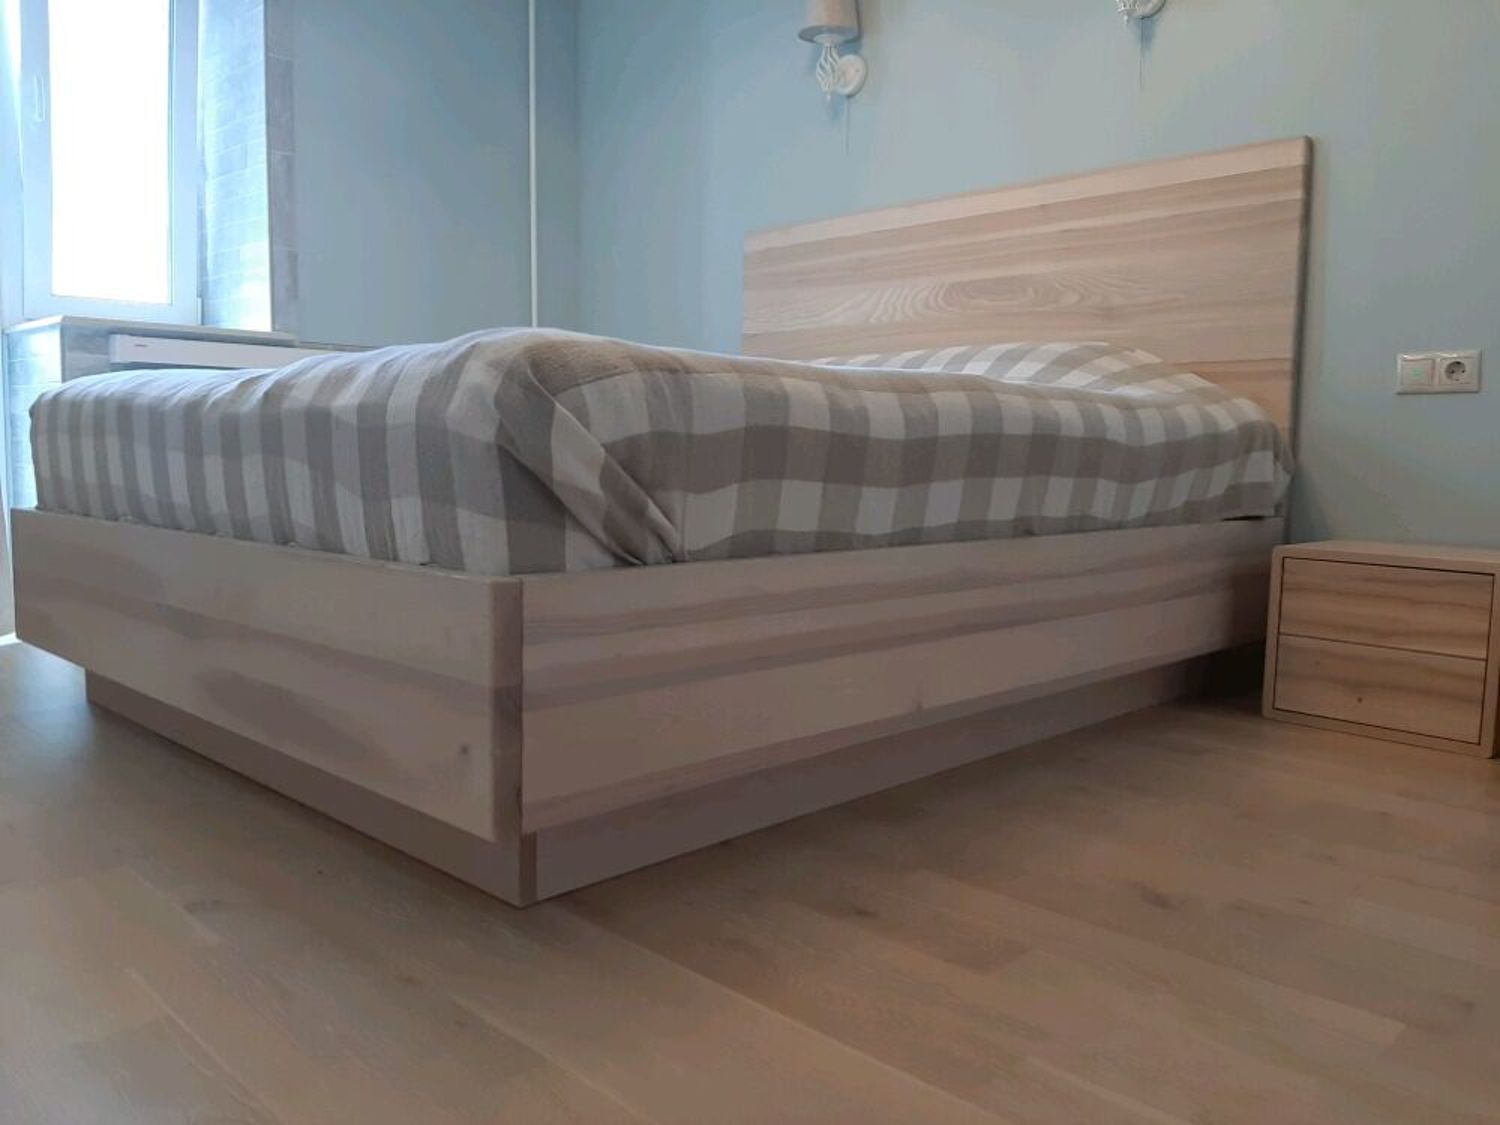 Фото №3 к отзыву покупателя Natalia о товаре Кровати: Кровать на заказ из массива натурального дерева (ясень)